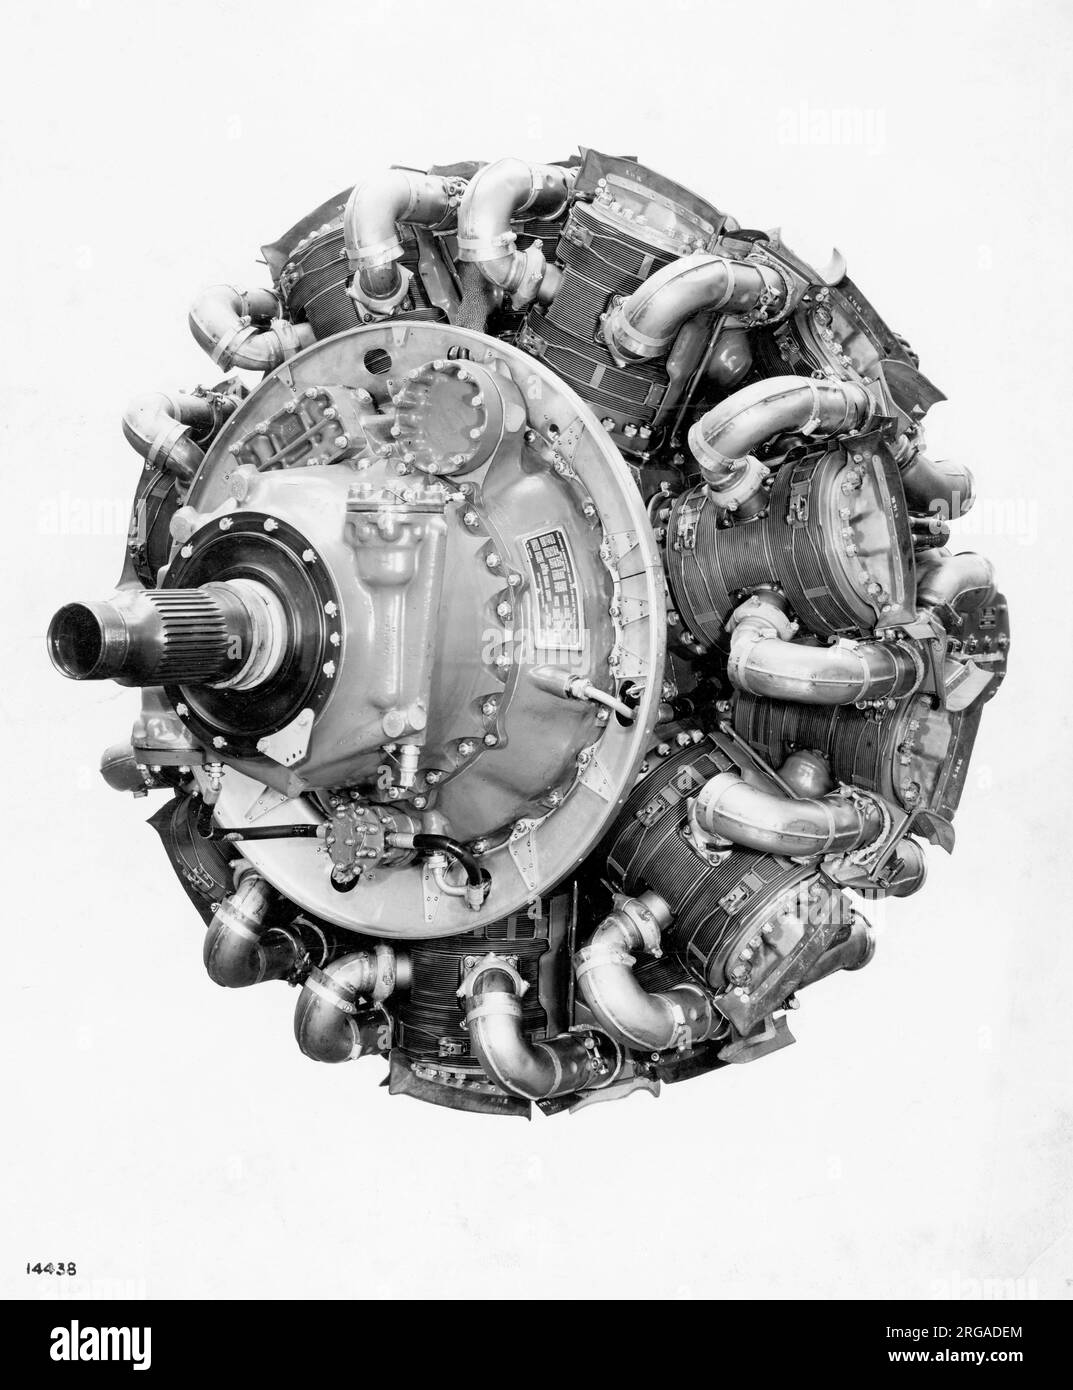 Bristol Hercules, motore a pistoni radiali a 14 cilindri con valvola a manicotto. Foto Stock